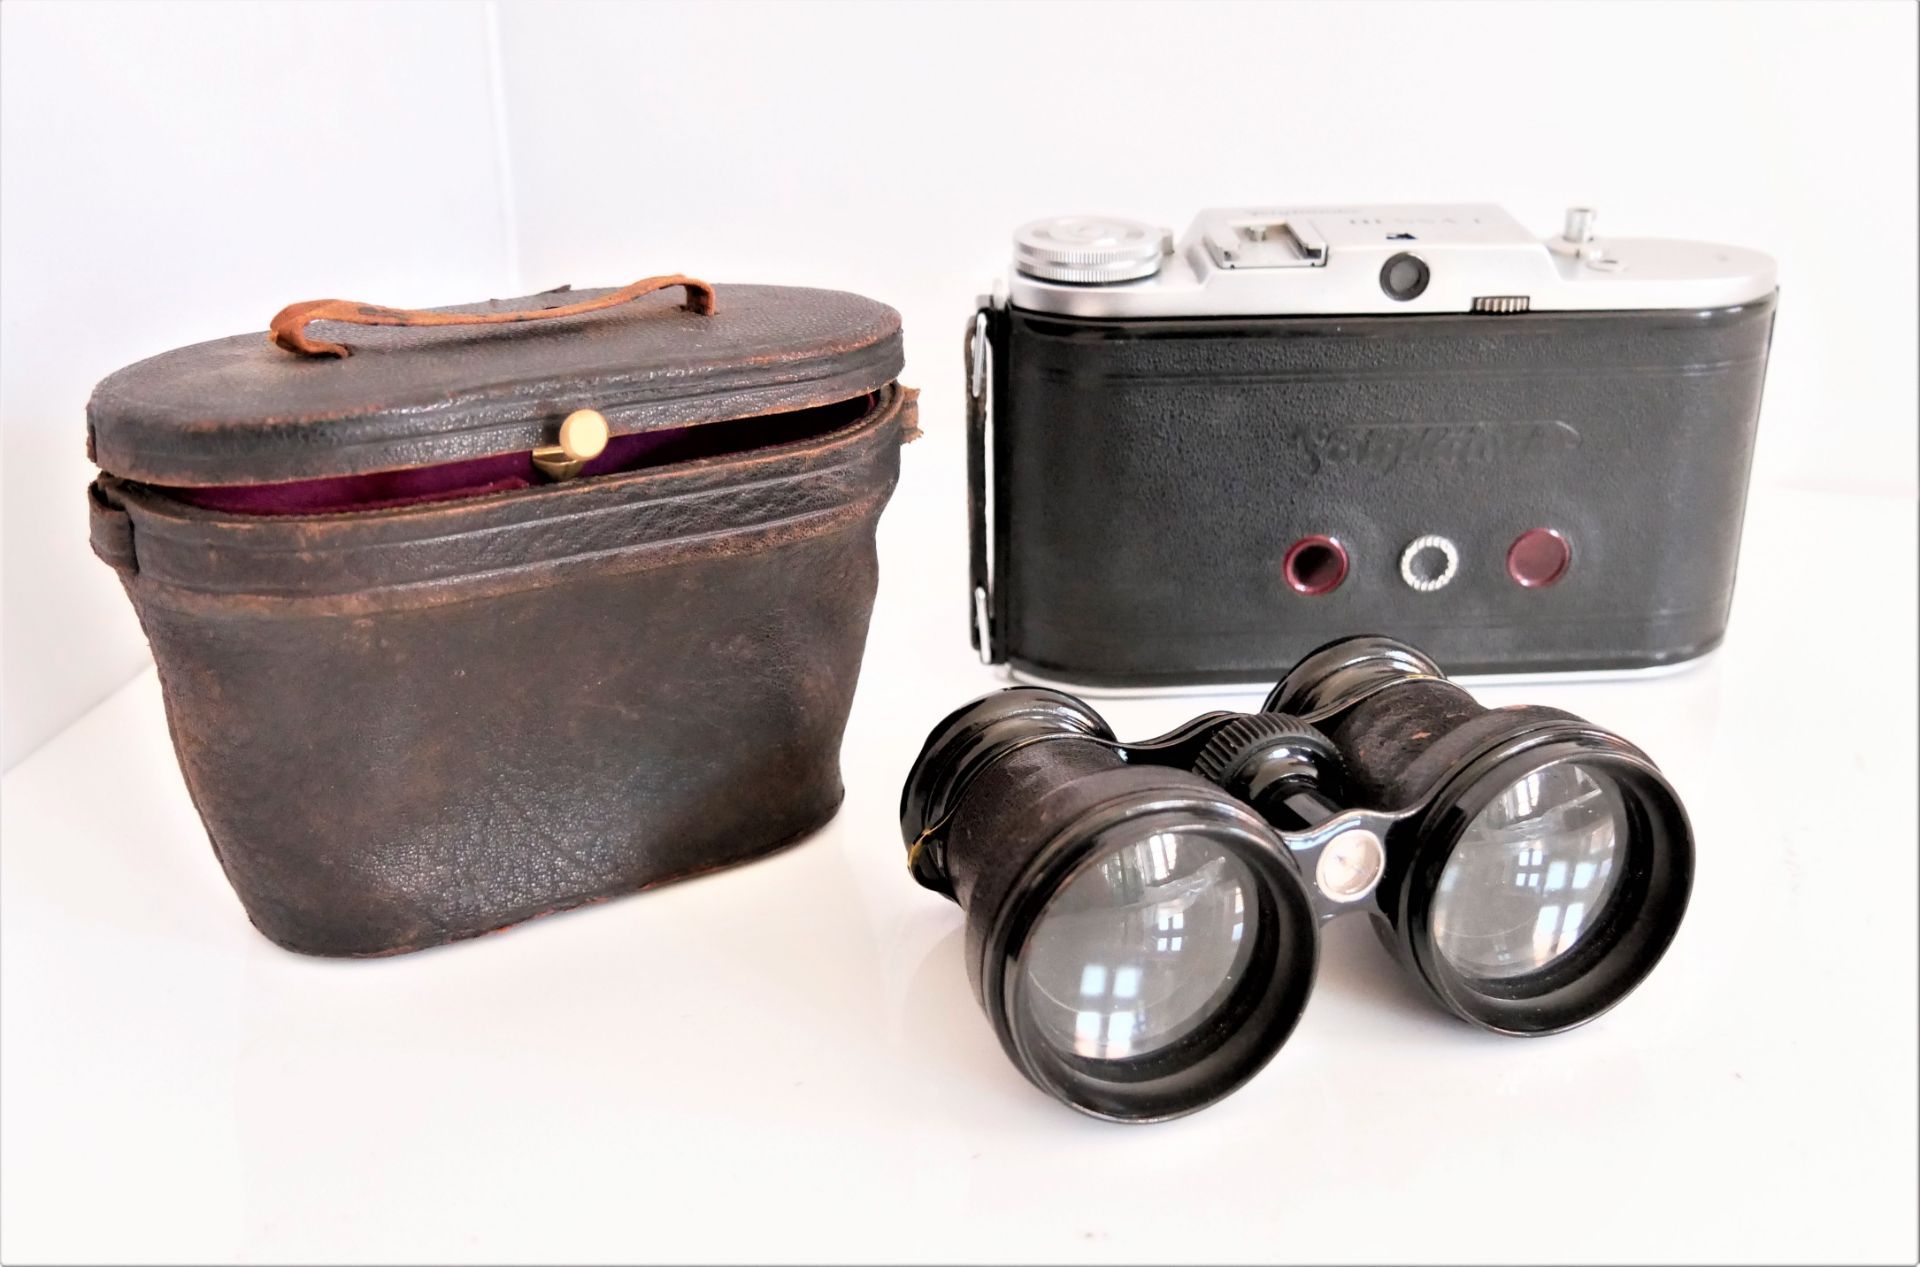 1 Voigtländer Klappkamera Modell Bessa I, Funktion nicht geprüft, sowie 1 Fernglas mit Kompass.